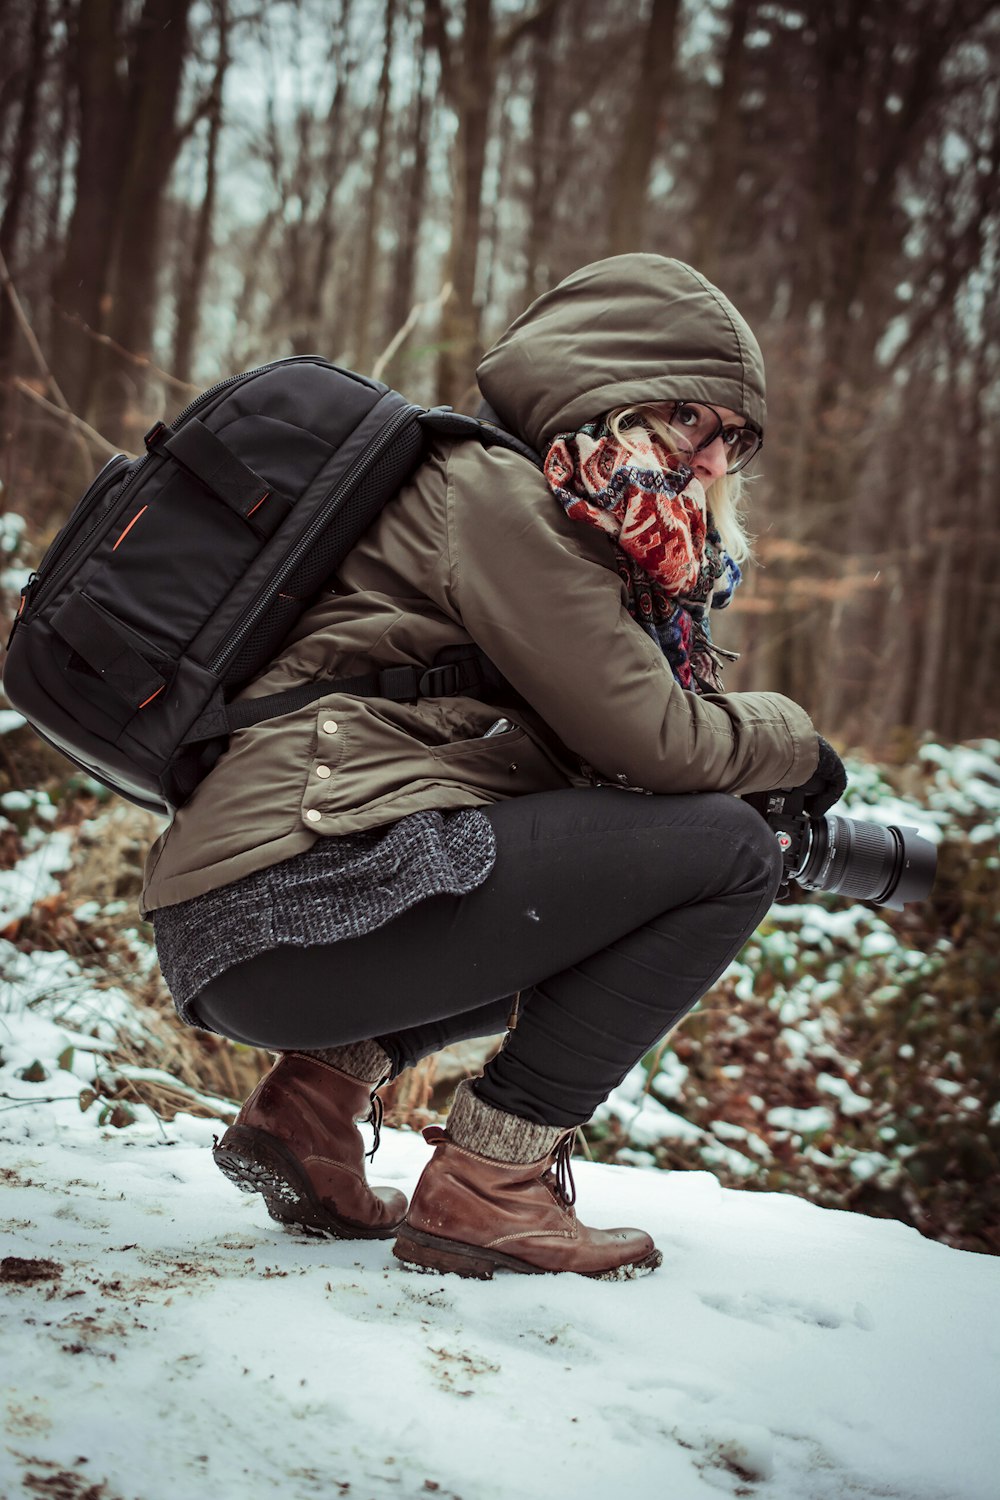 Frau in brauner Kapuzenjacke hält Kamera, während sie tagsüber auf schneebedecktem Boden hockt